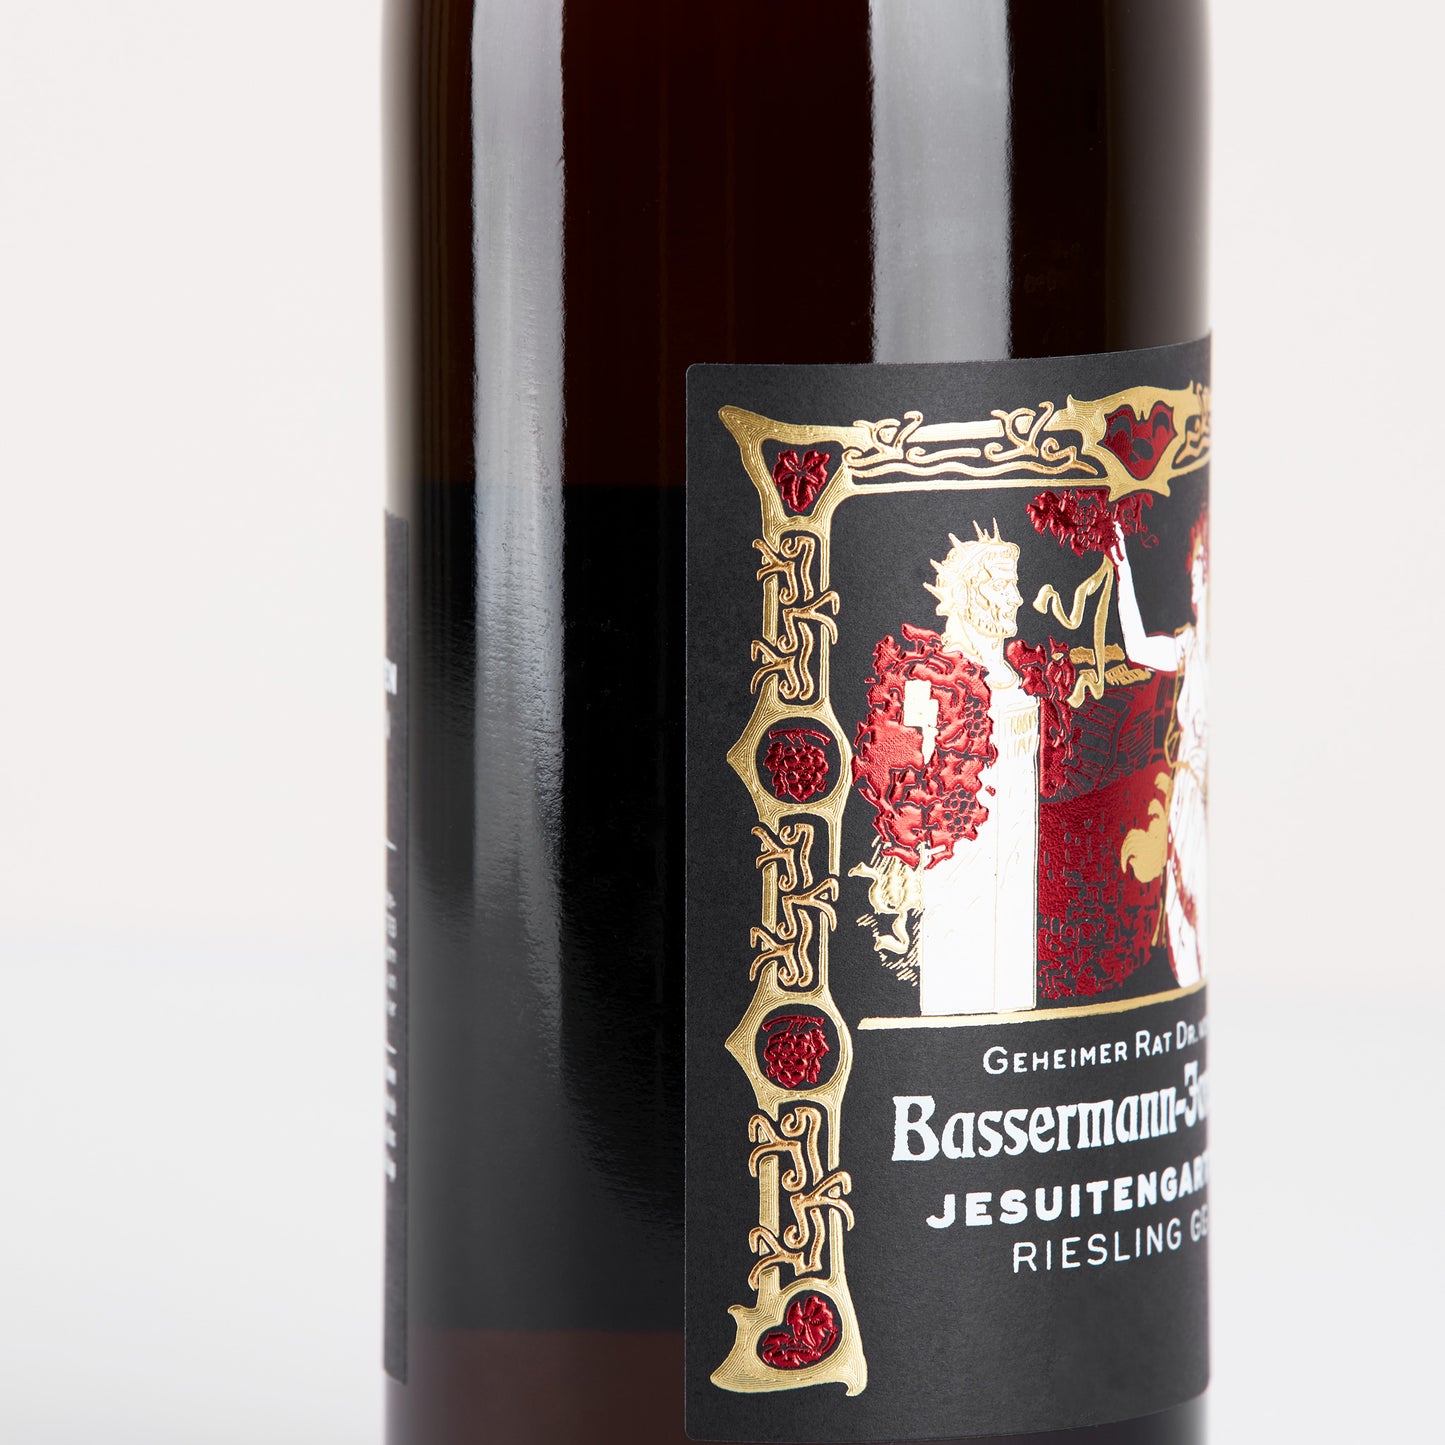 Weinflasche stehend, schwarzes Etikett mit der Aufschrift: "Bassermann-Jordan Jesuitengarten GG"